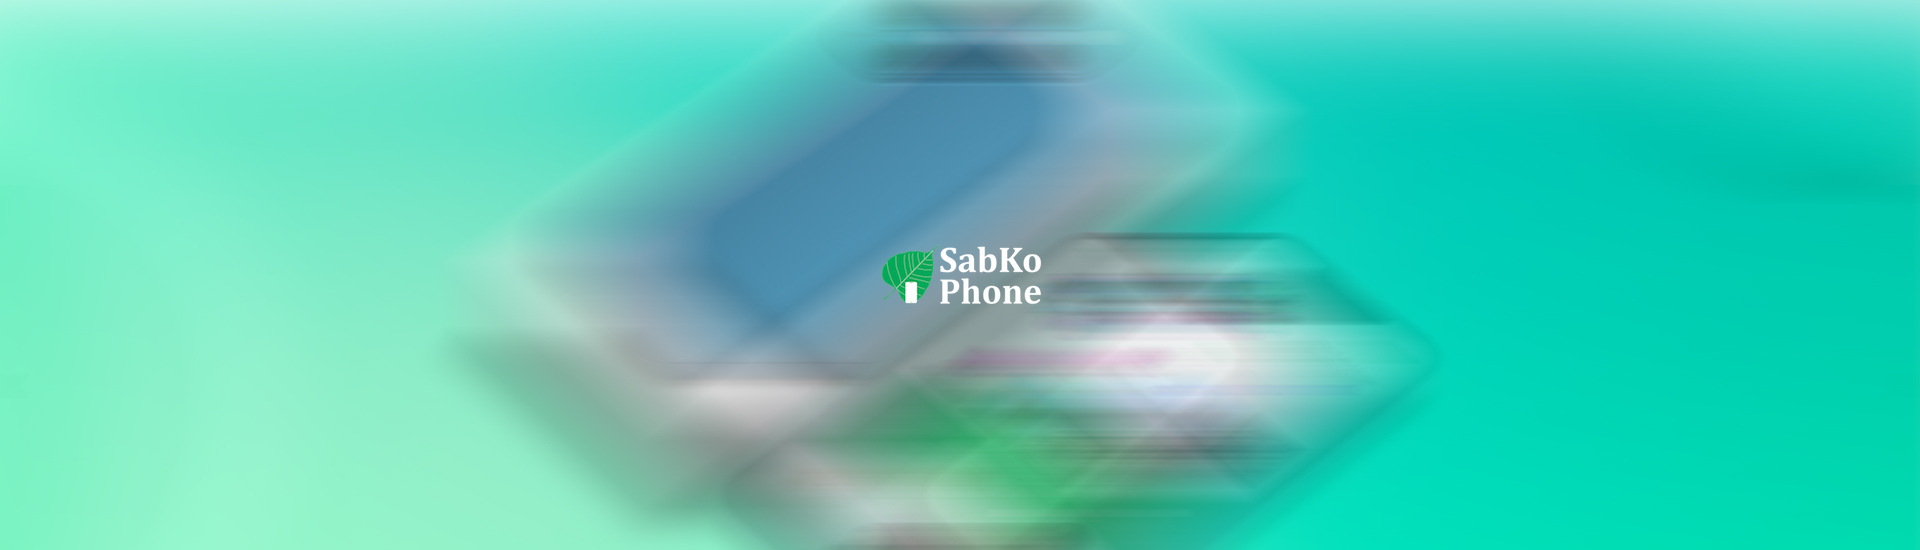 Sabko Phone